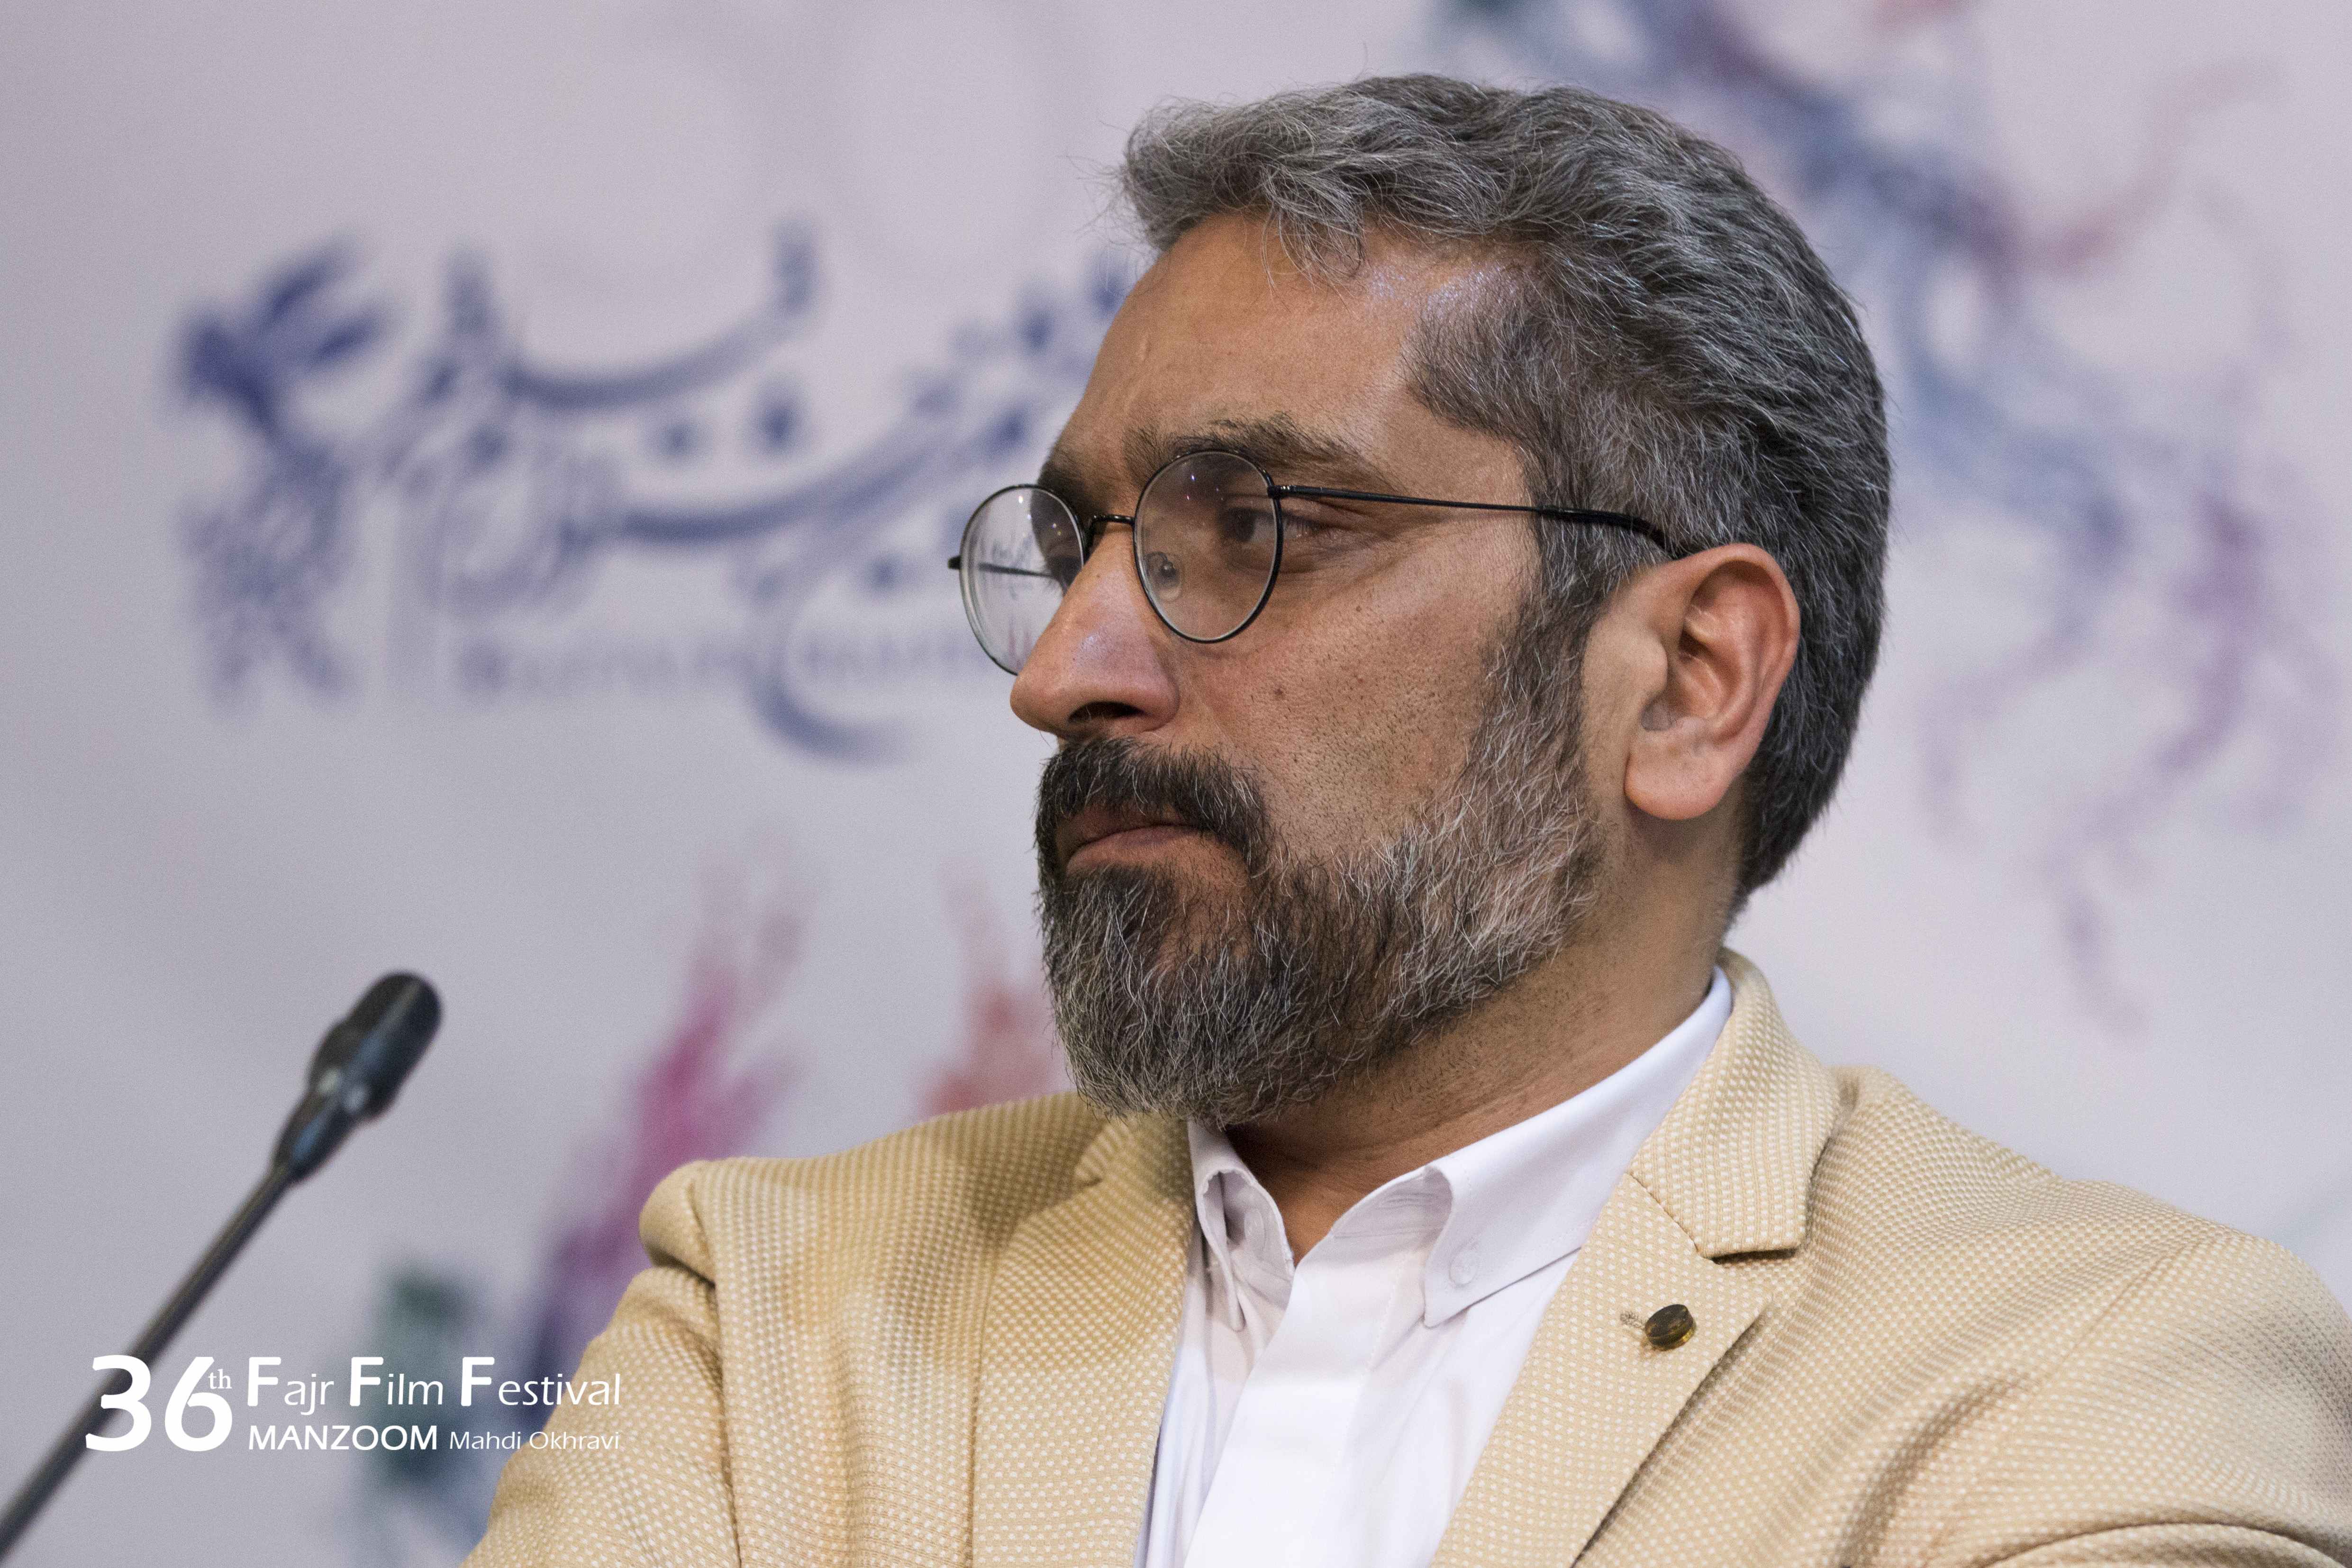 سیدحامد حسینی در نشست خبری فیلم سینمایی سرو زیر آب